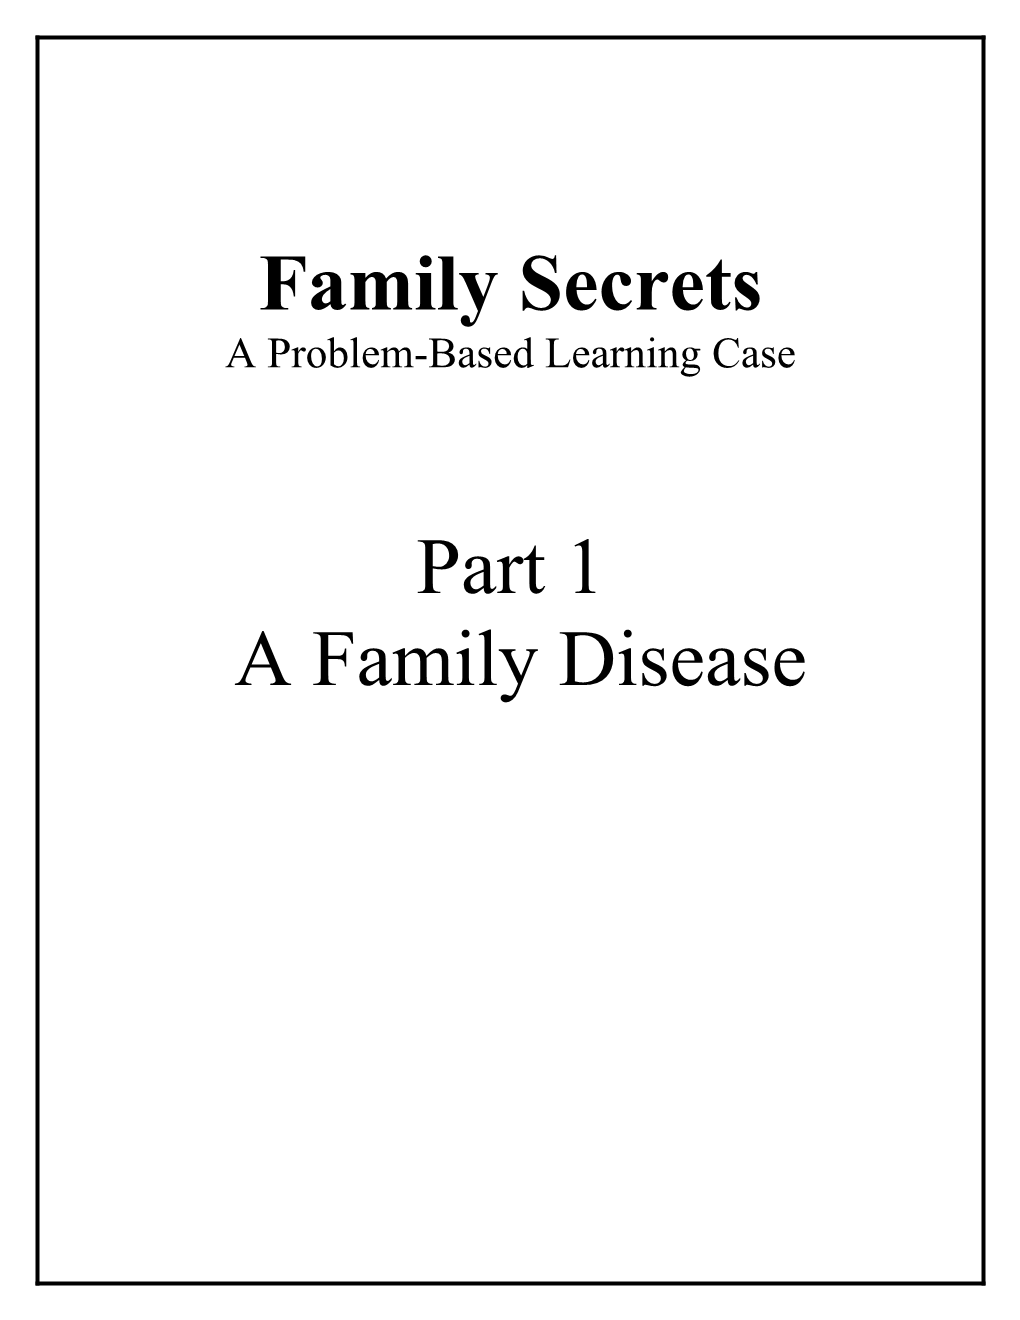 Part 1 Family Secrets